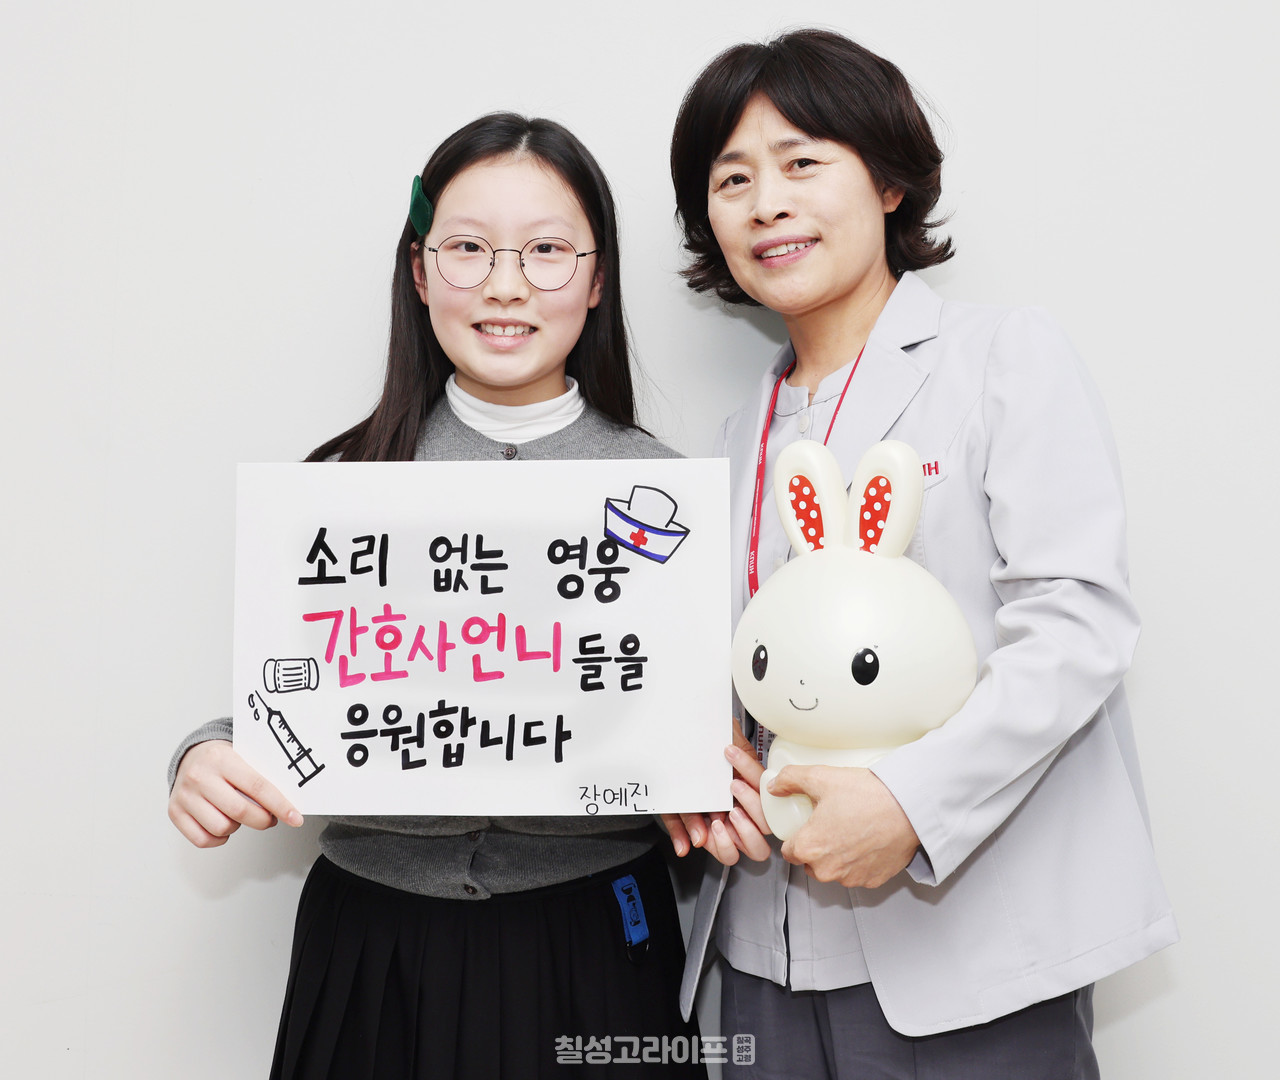 장예진 양이 간호사를 응원하는 문구와 돈을 모았던 토끼 저금통을 들고 김미영 간호부장과 기념촬영을 하고 있다.